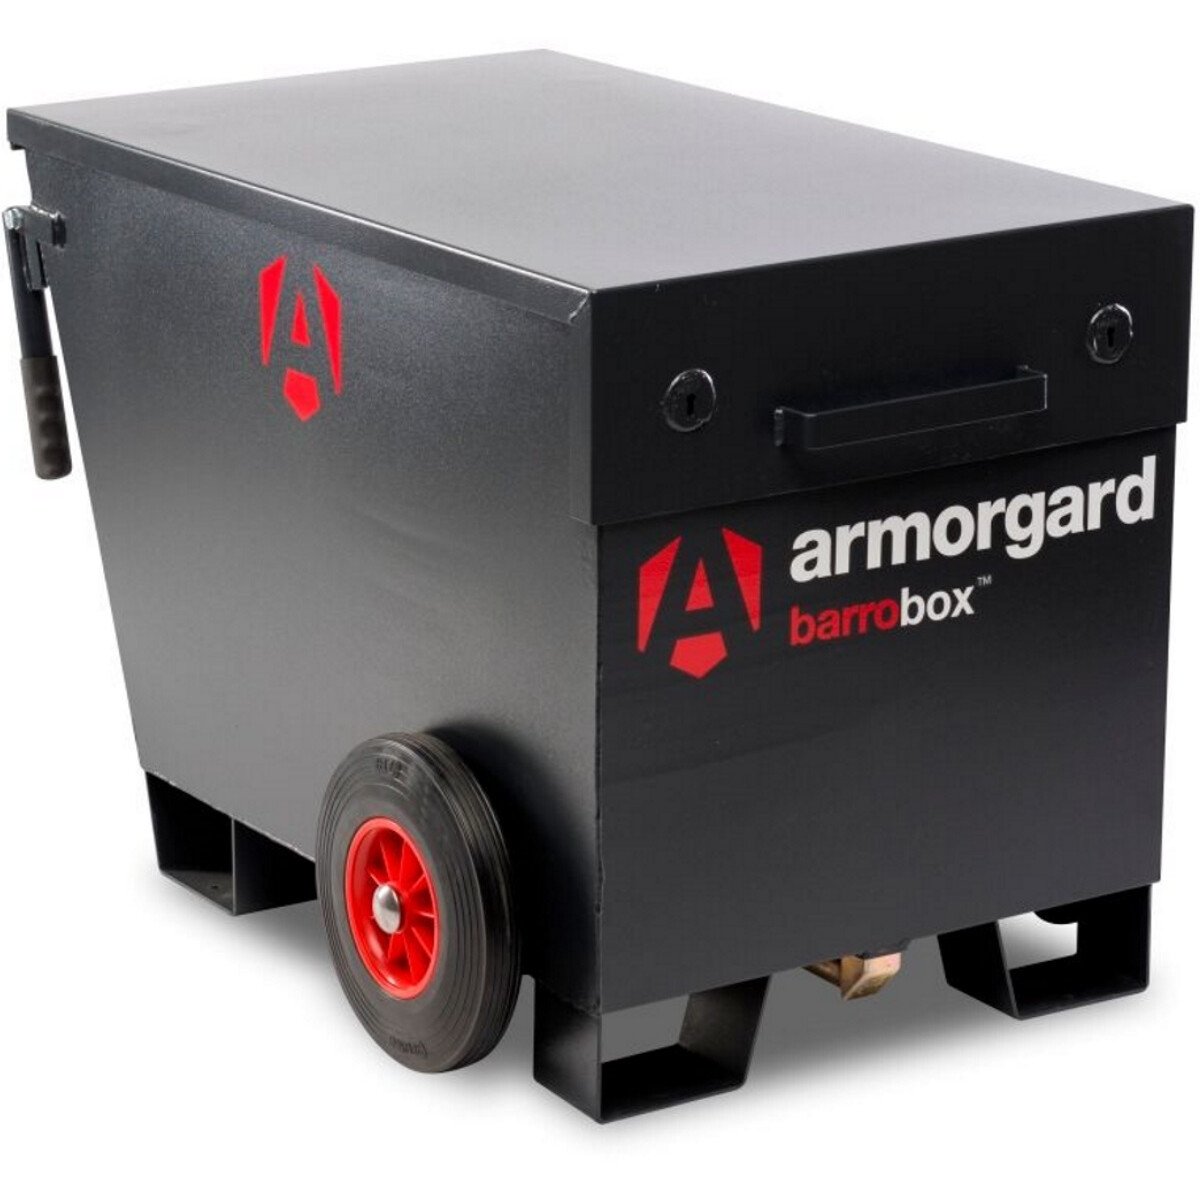 Armorgard BB2 Barrobox Mobile Site Security Box